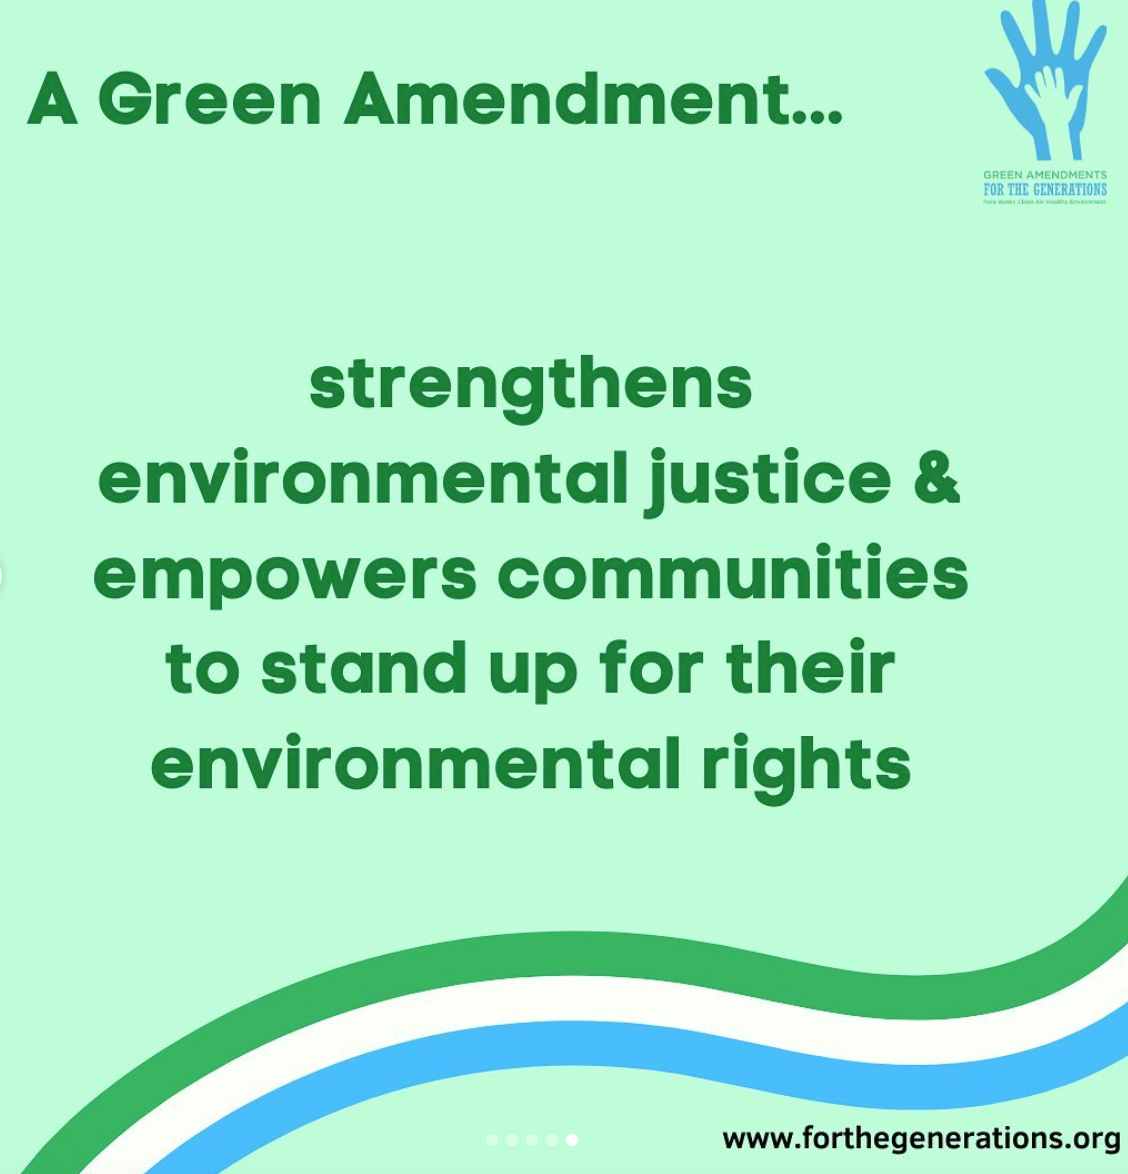 Text including a Green Amendment